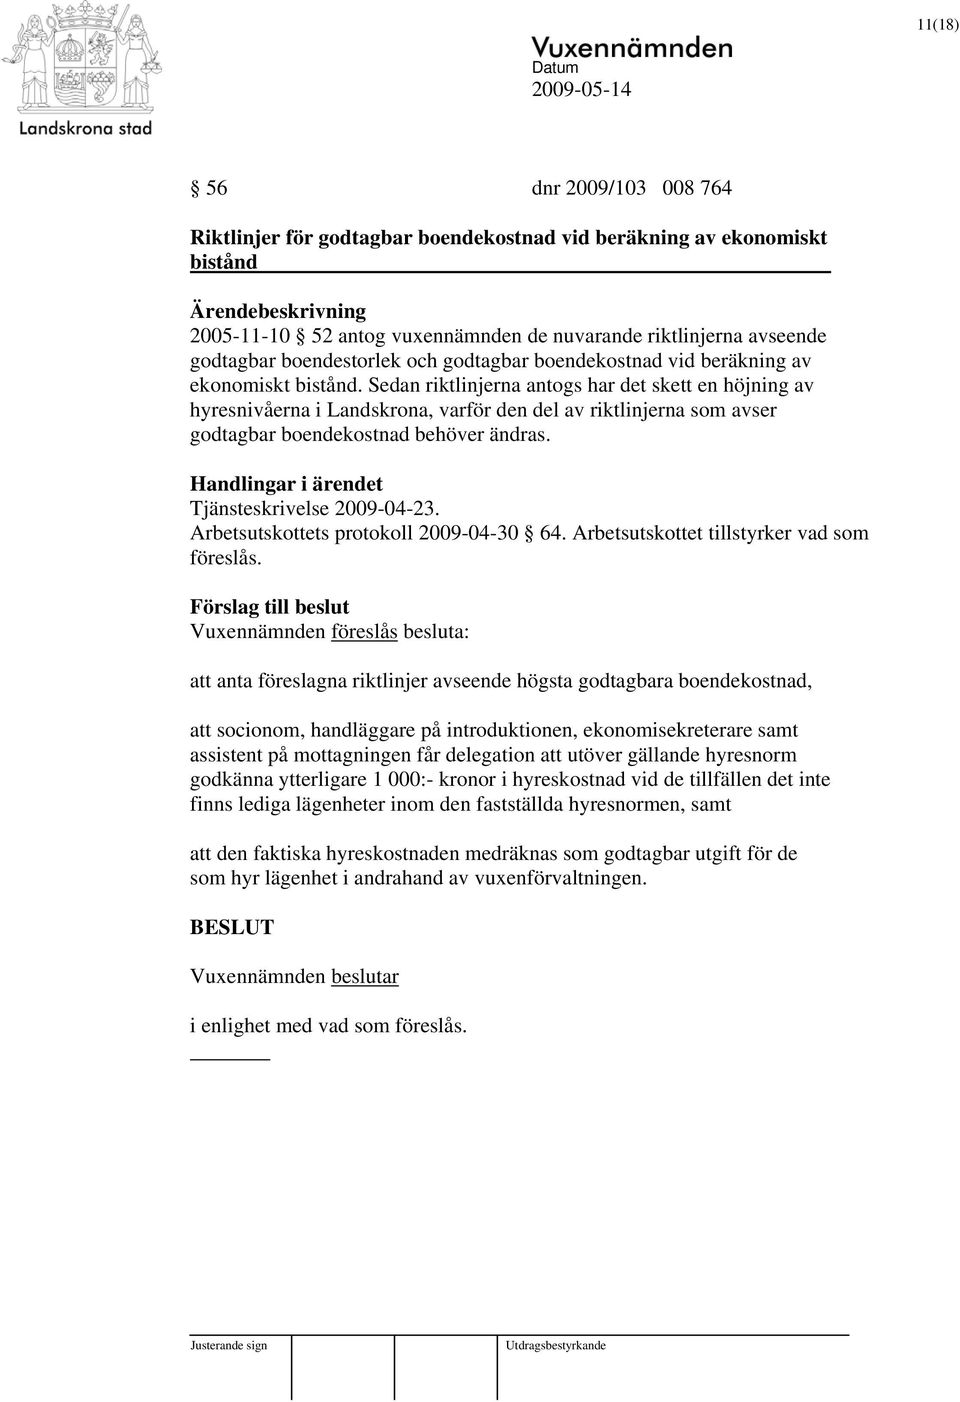 Sedan riktlinjerna antogs har det skett en höjning av hyresnivåerna i Landskrona, varför den del av riktlinjerna som avser godtagbar boendekostnad behöver ändras. Tjänsteskrivelse 2009-04-23.